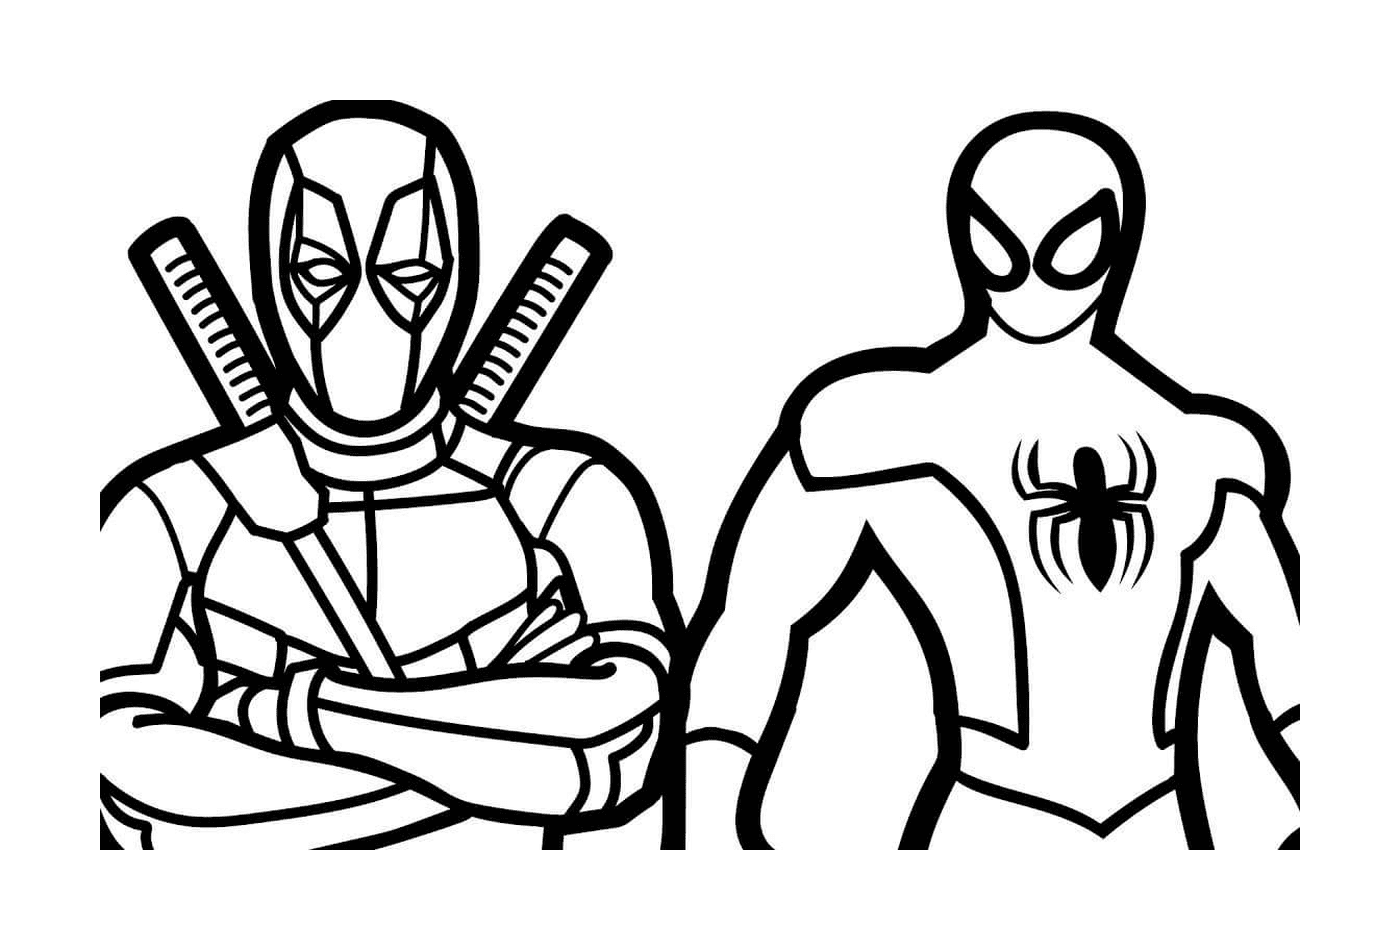  Spider-Man und Deadpool 